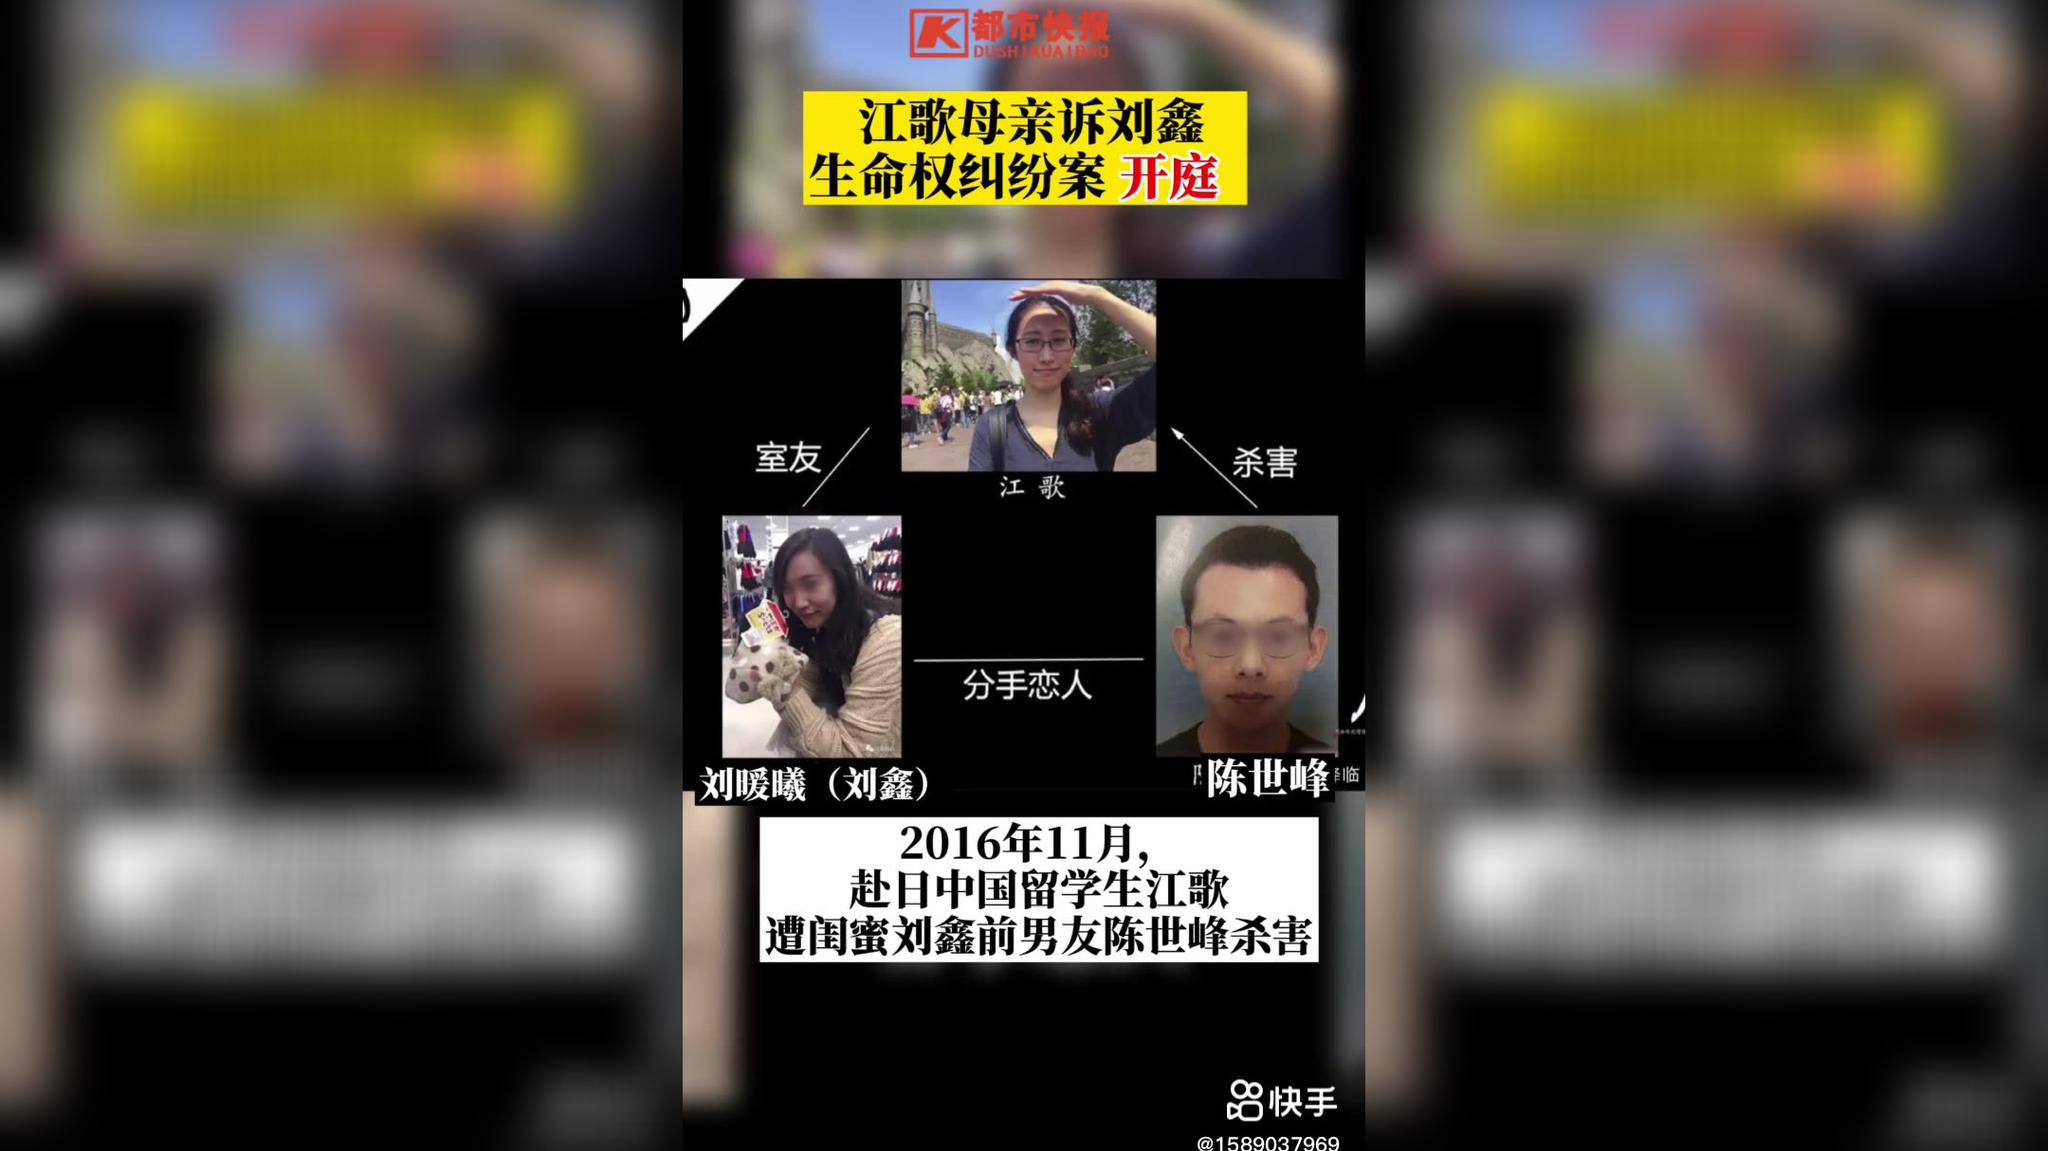 江歌母亲诉刘鑫案择期宣判:双方分歧较大